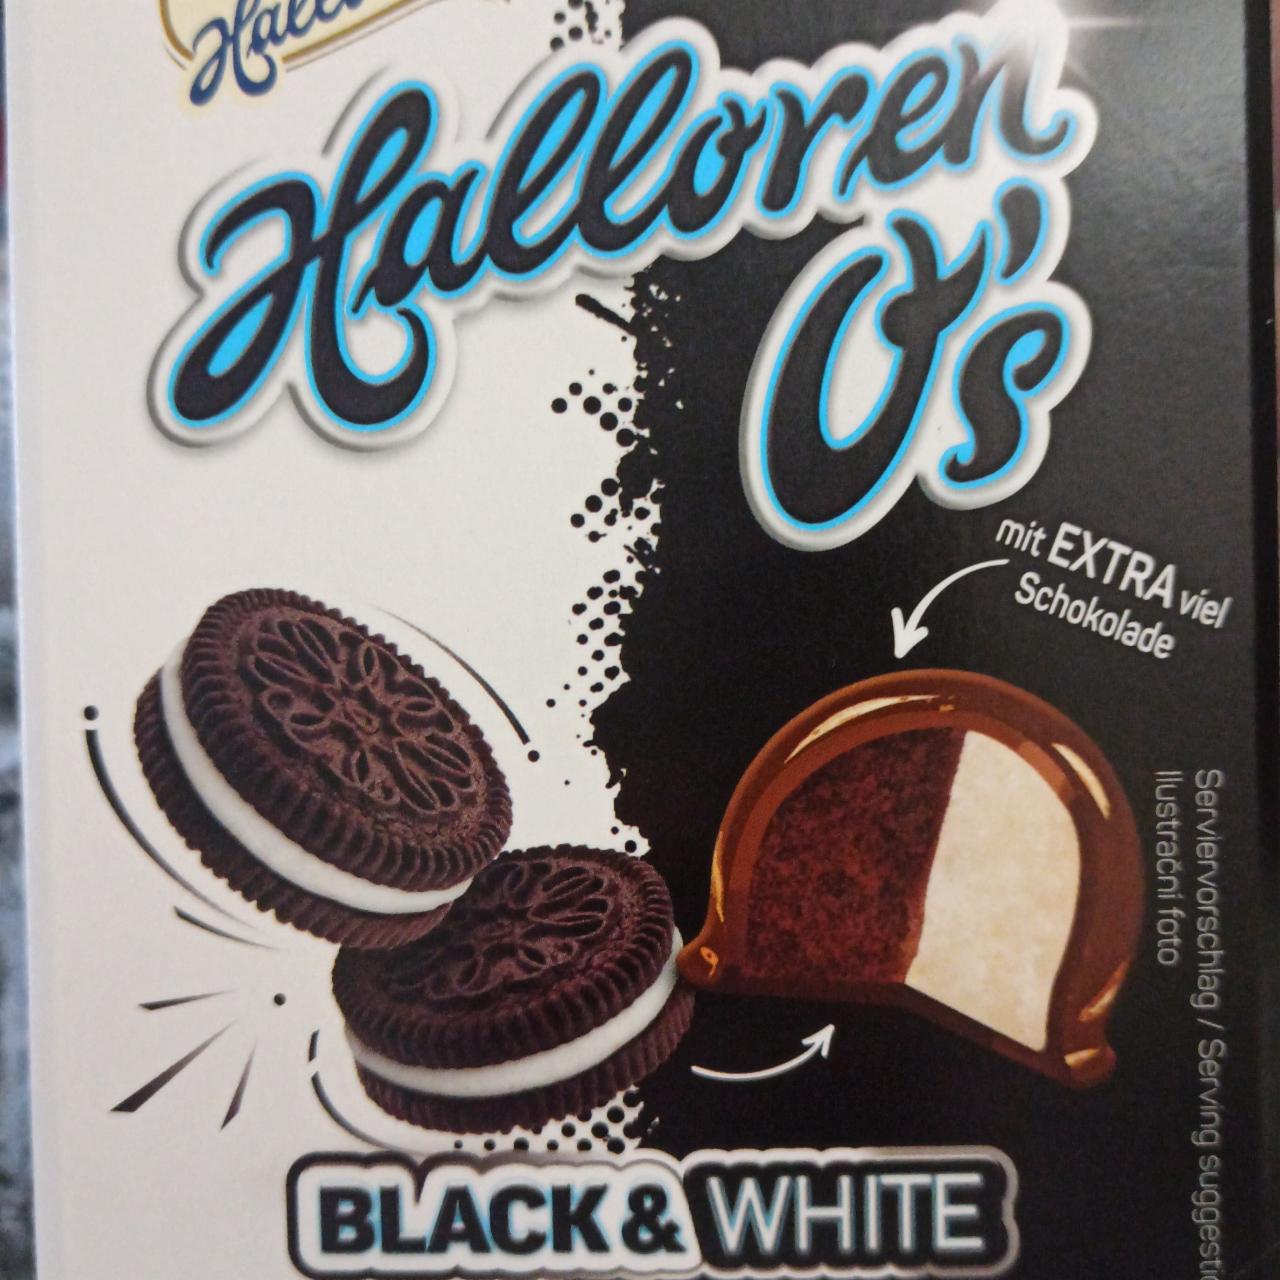 Oreo black&white Halloren O's - kalórie, kJ a nutričné hodnoty